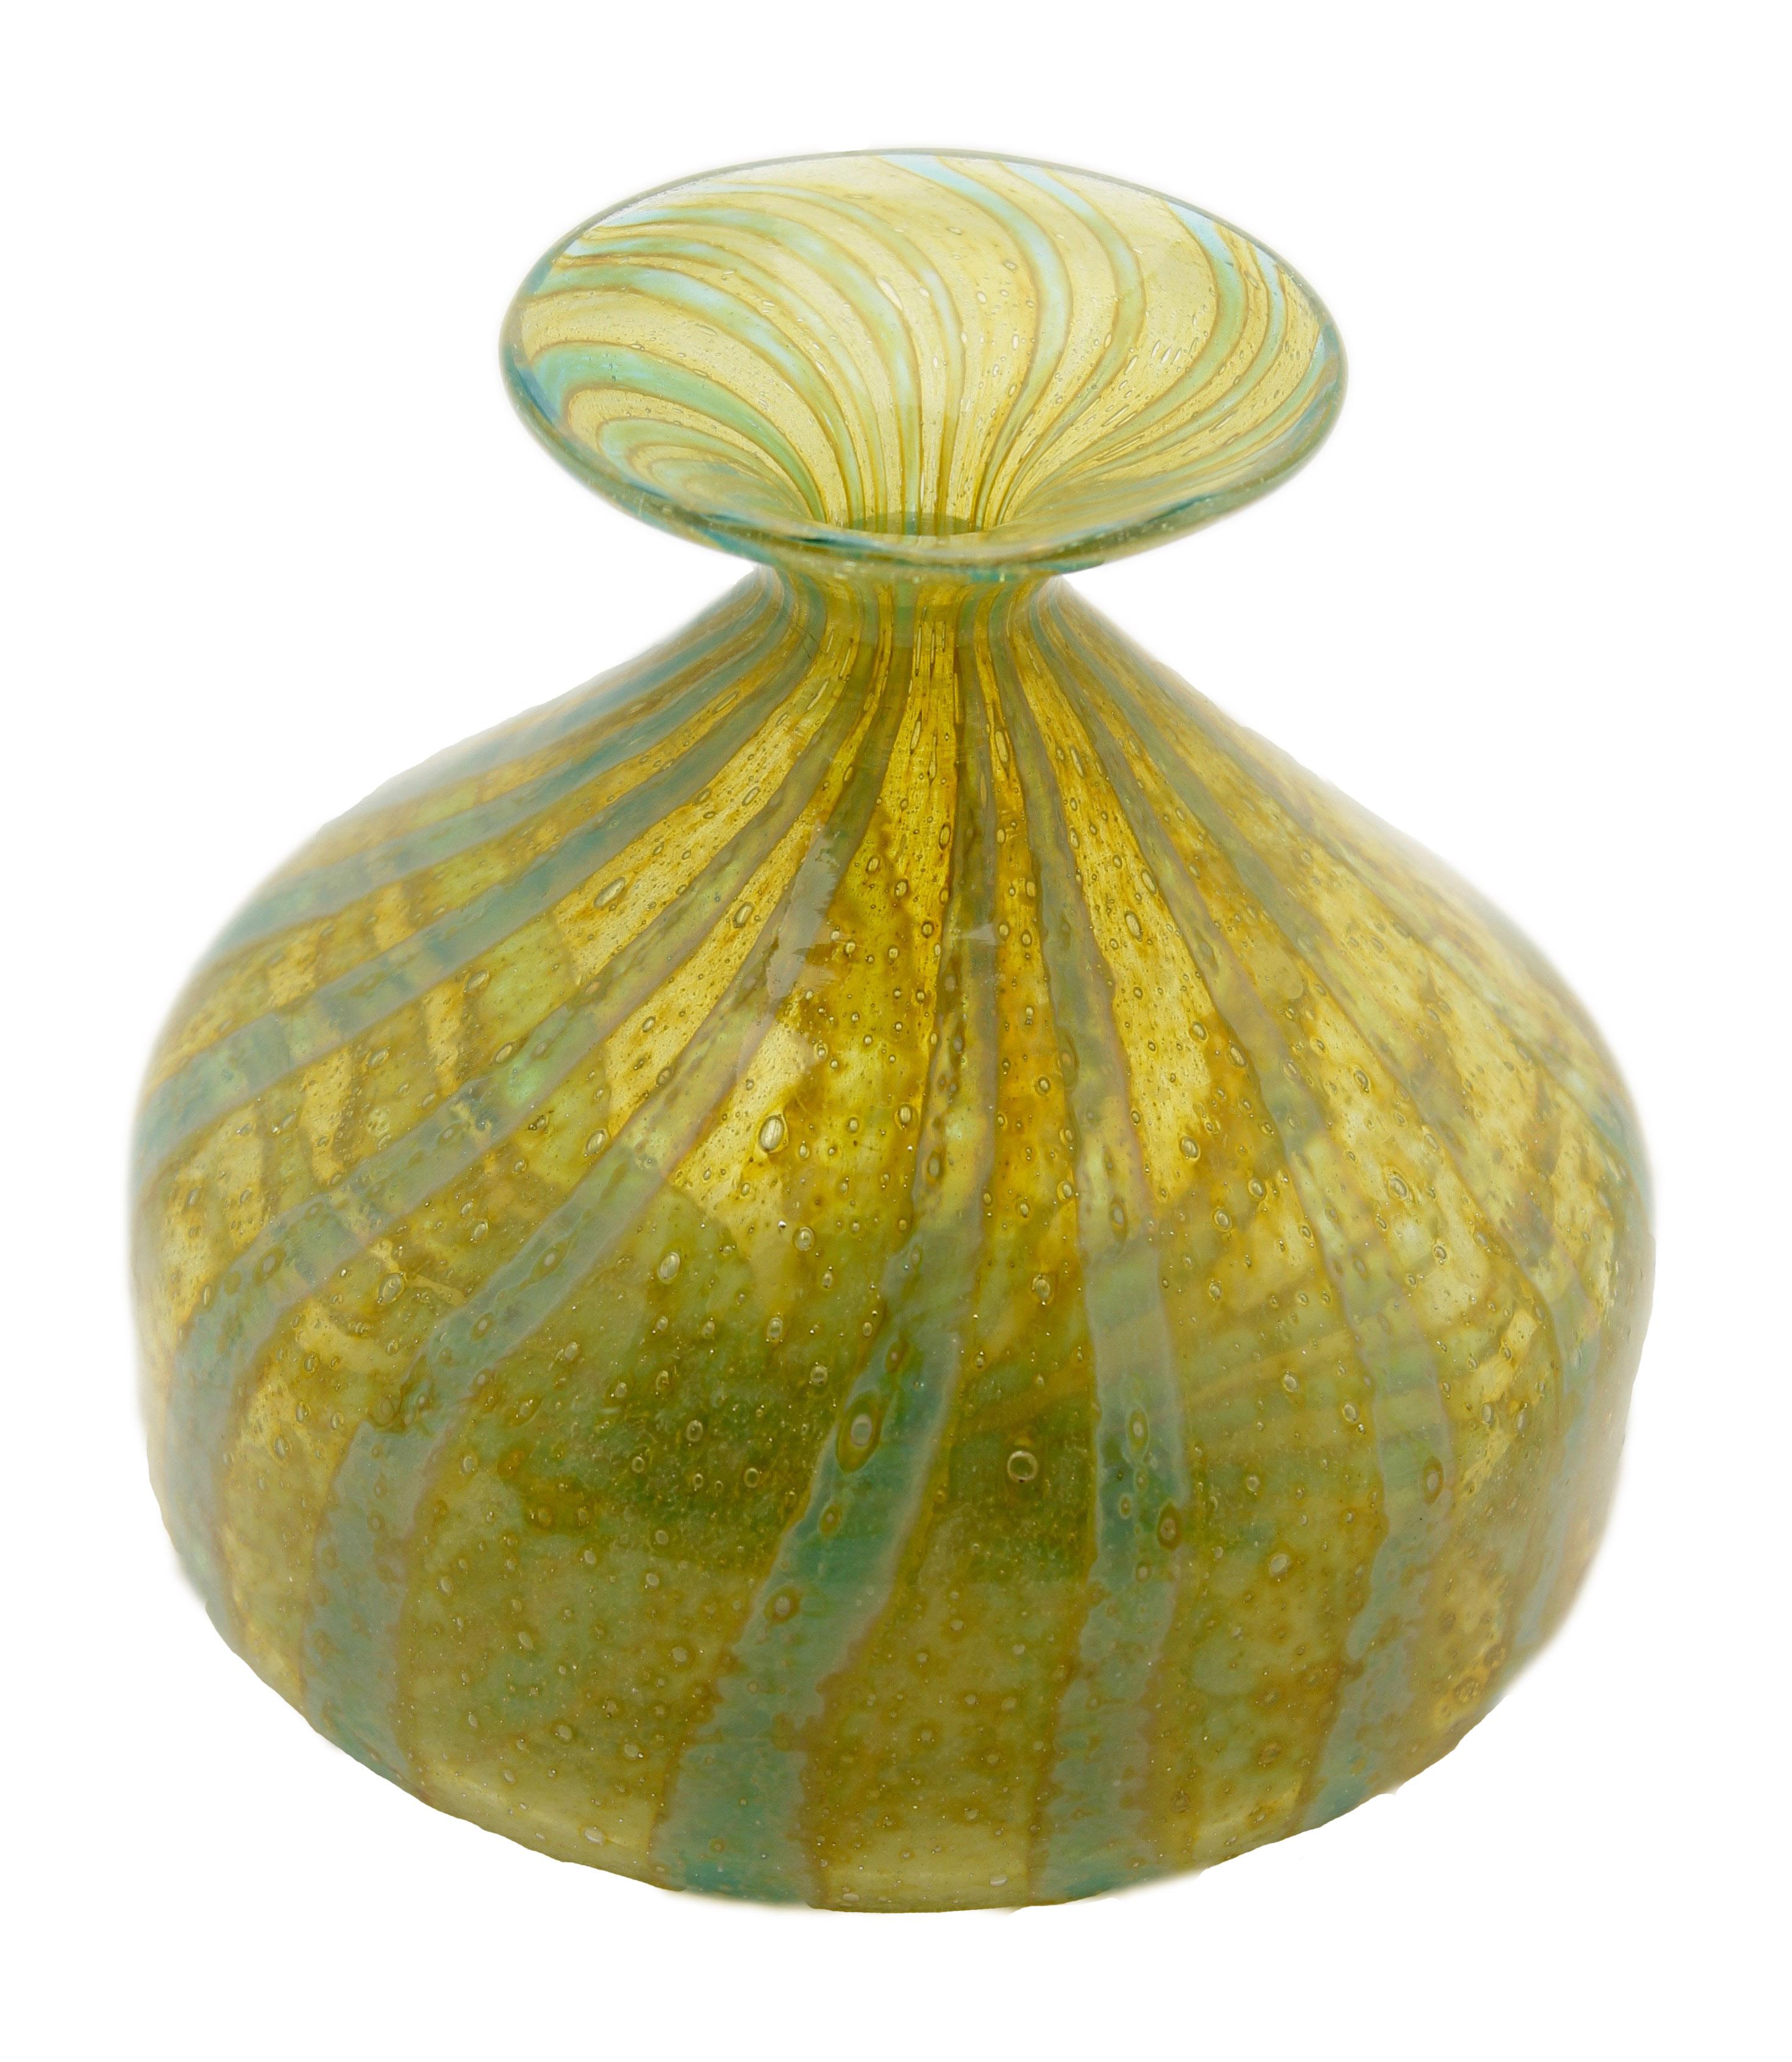 Handgeblasene Mdina-Solifleur-Vase mit breitem Rand, (1970-1975).
Typische mediterrane Farben, meergrüne Fäden, die über einem gelbgrünen Glasboden mit Blaseneinschlüssen wirbeln.
Hergestellt auf der Insel Malta, um die moderne Anwendung alter